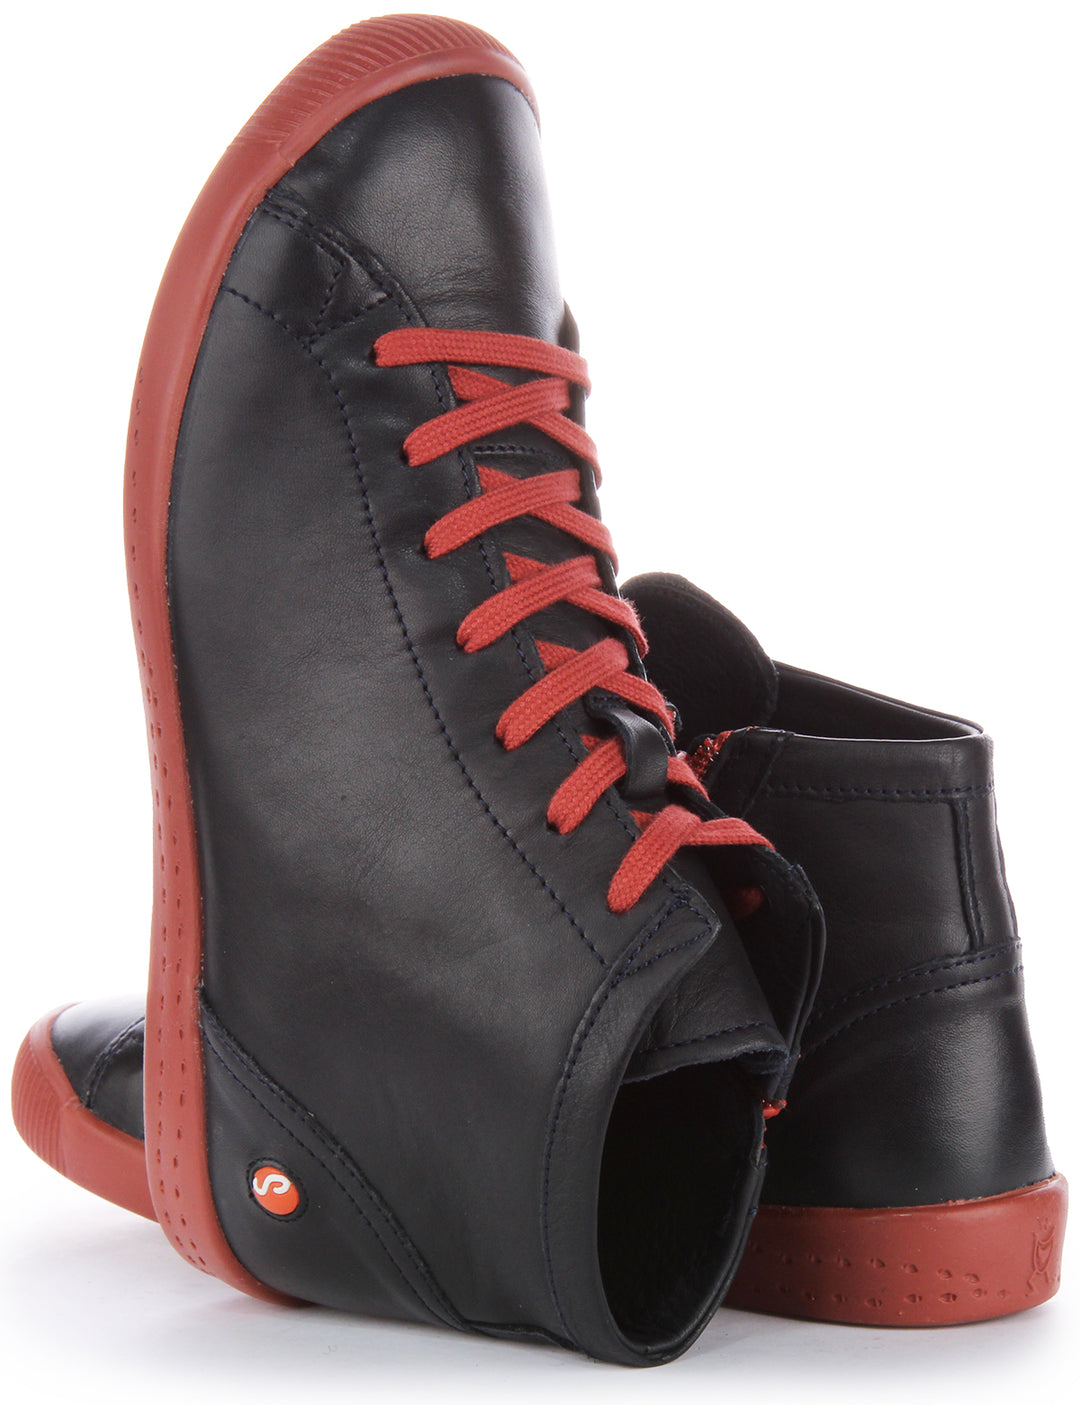 Softinos Ibb1653 Supple Damen Sneakers aus weichem Leder in Rot und Marineblau